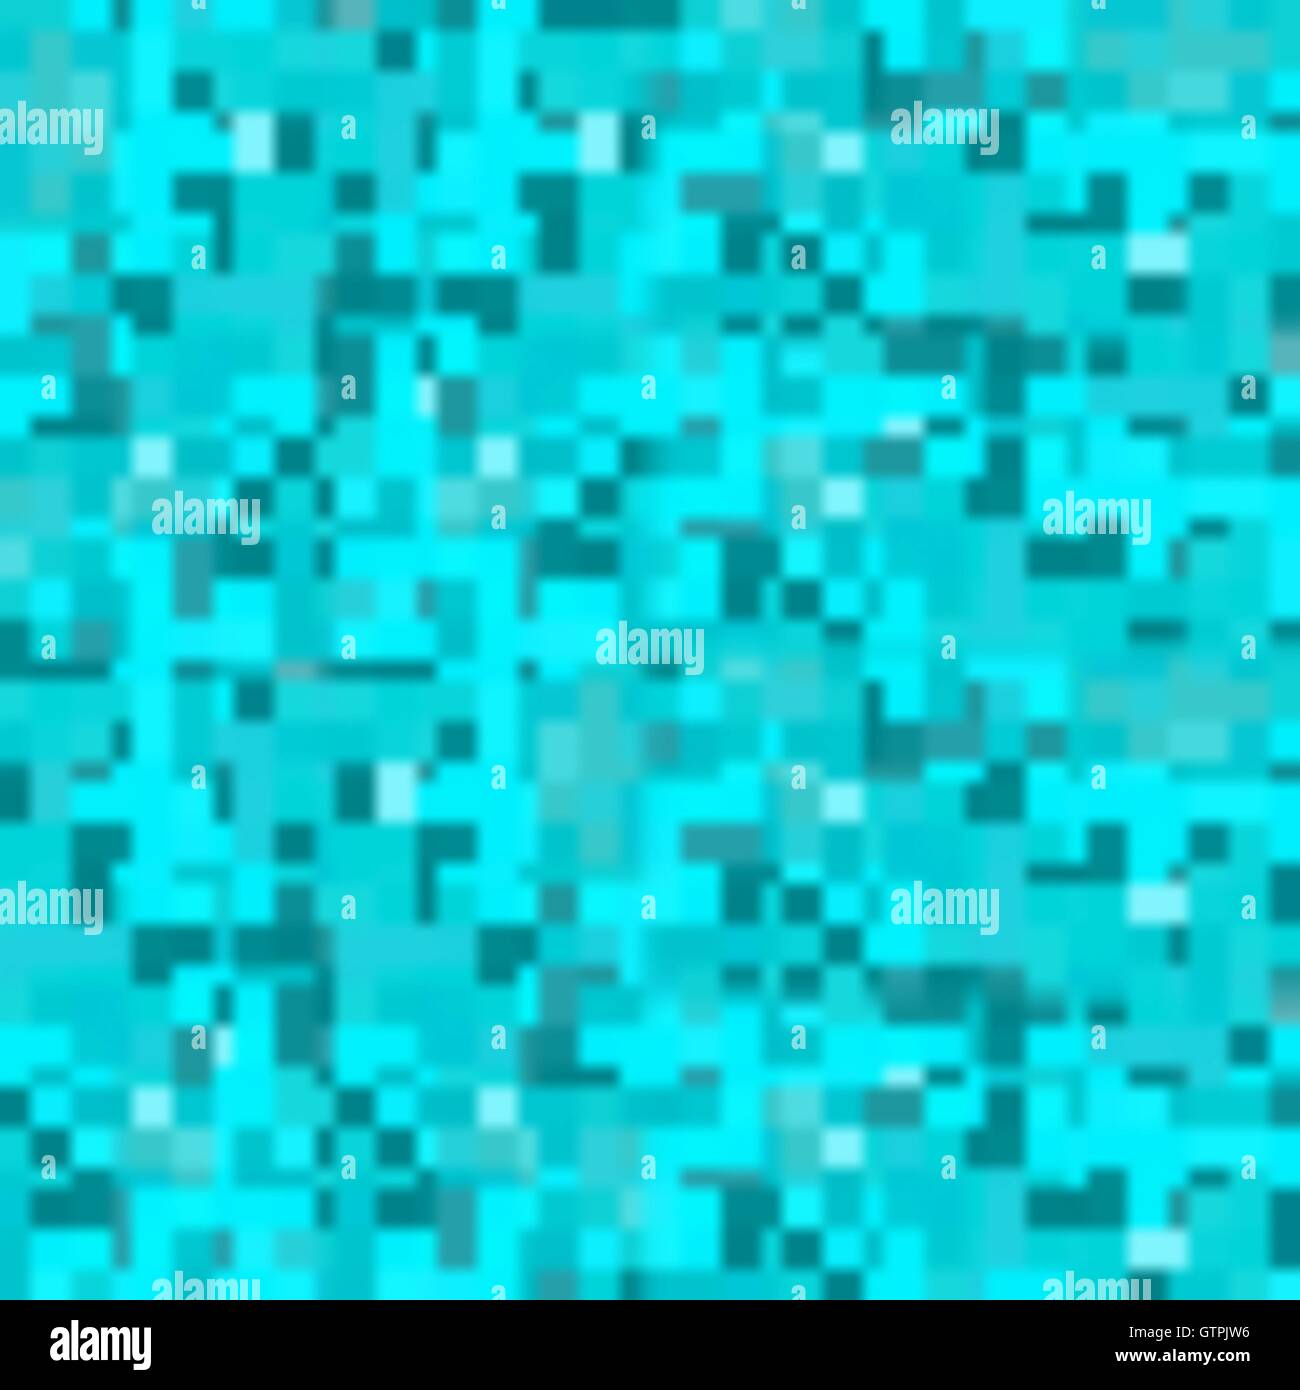 Vektor Blautönen modernes Design Pixel Camouflage-Muster Stock Vektor